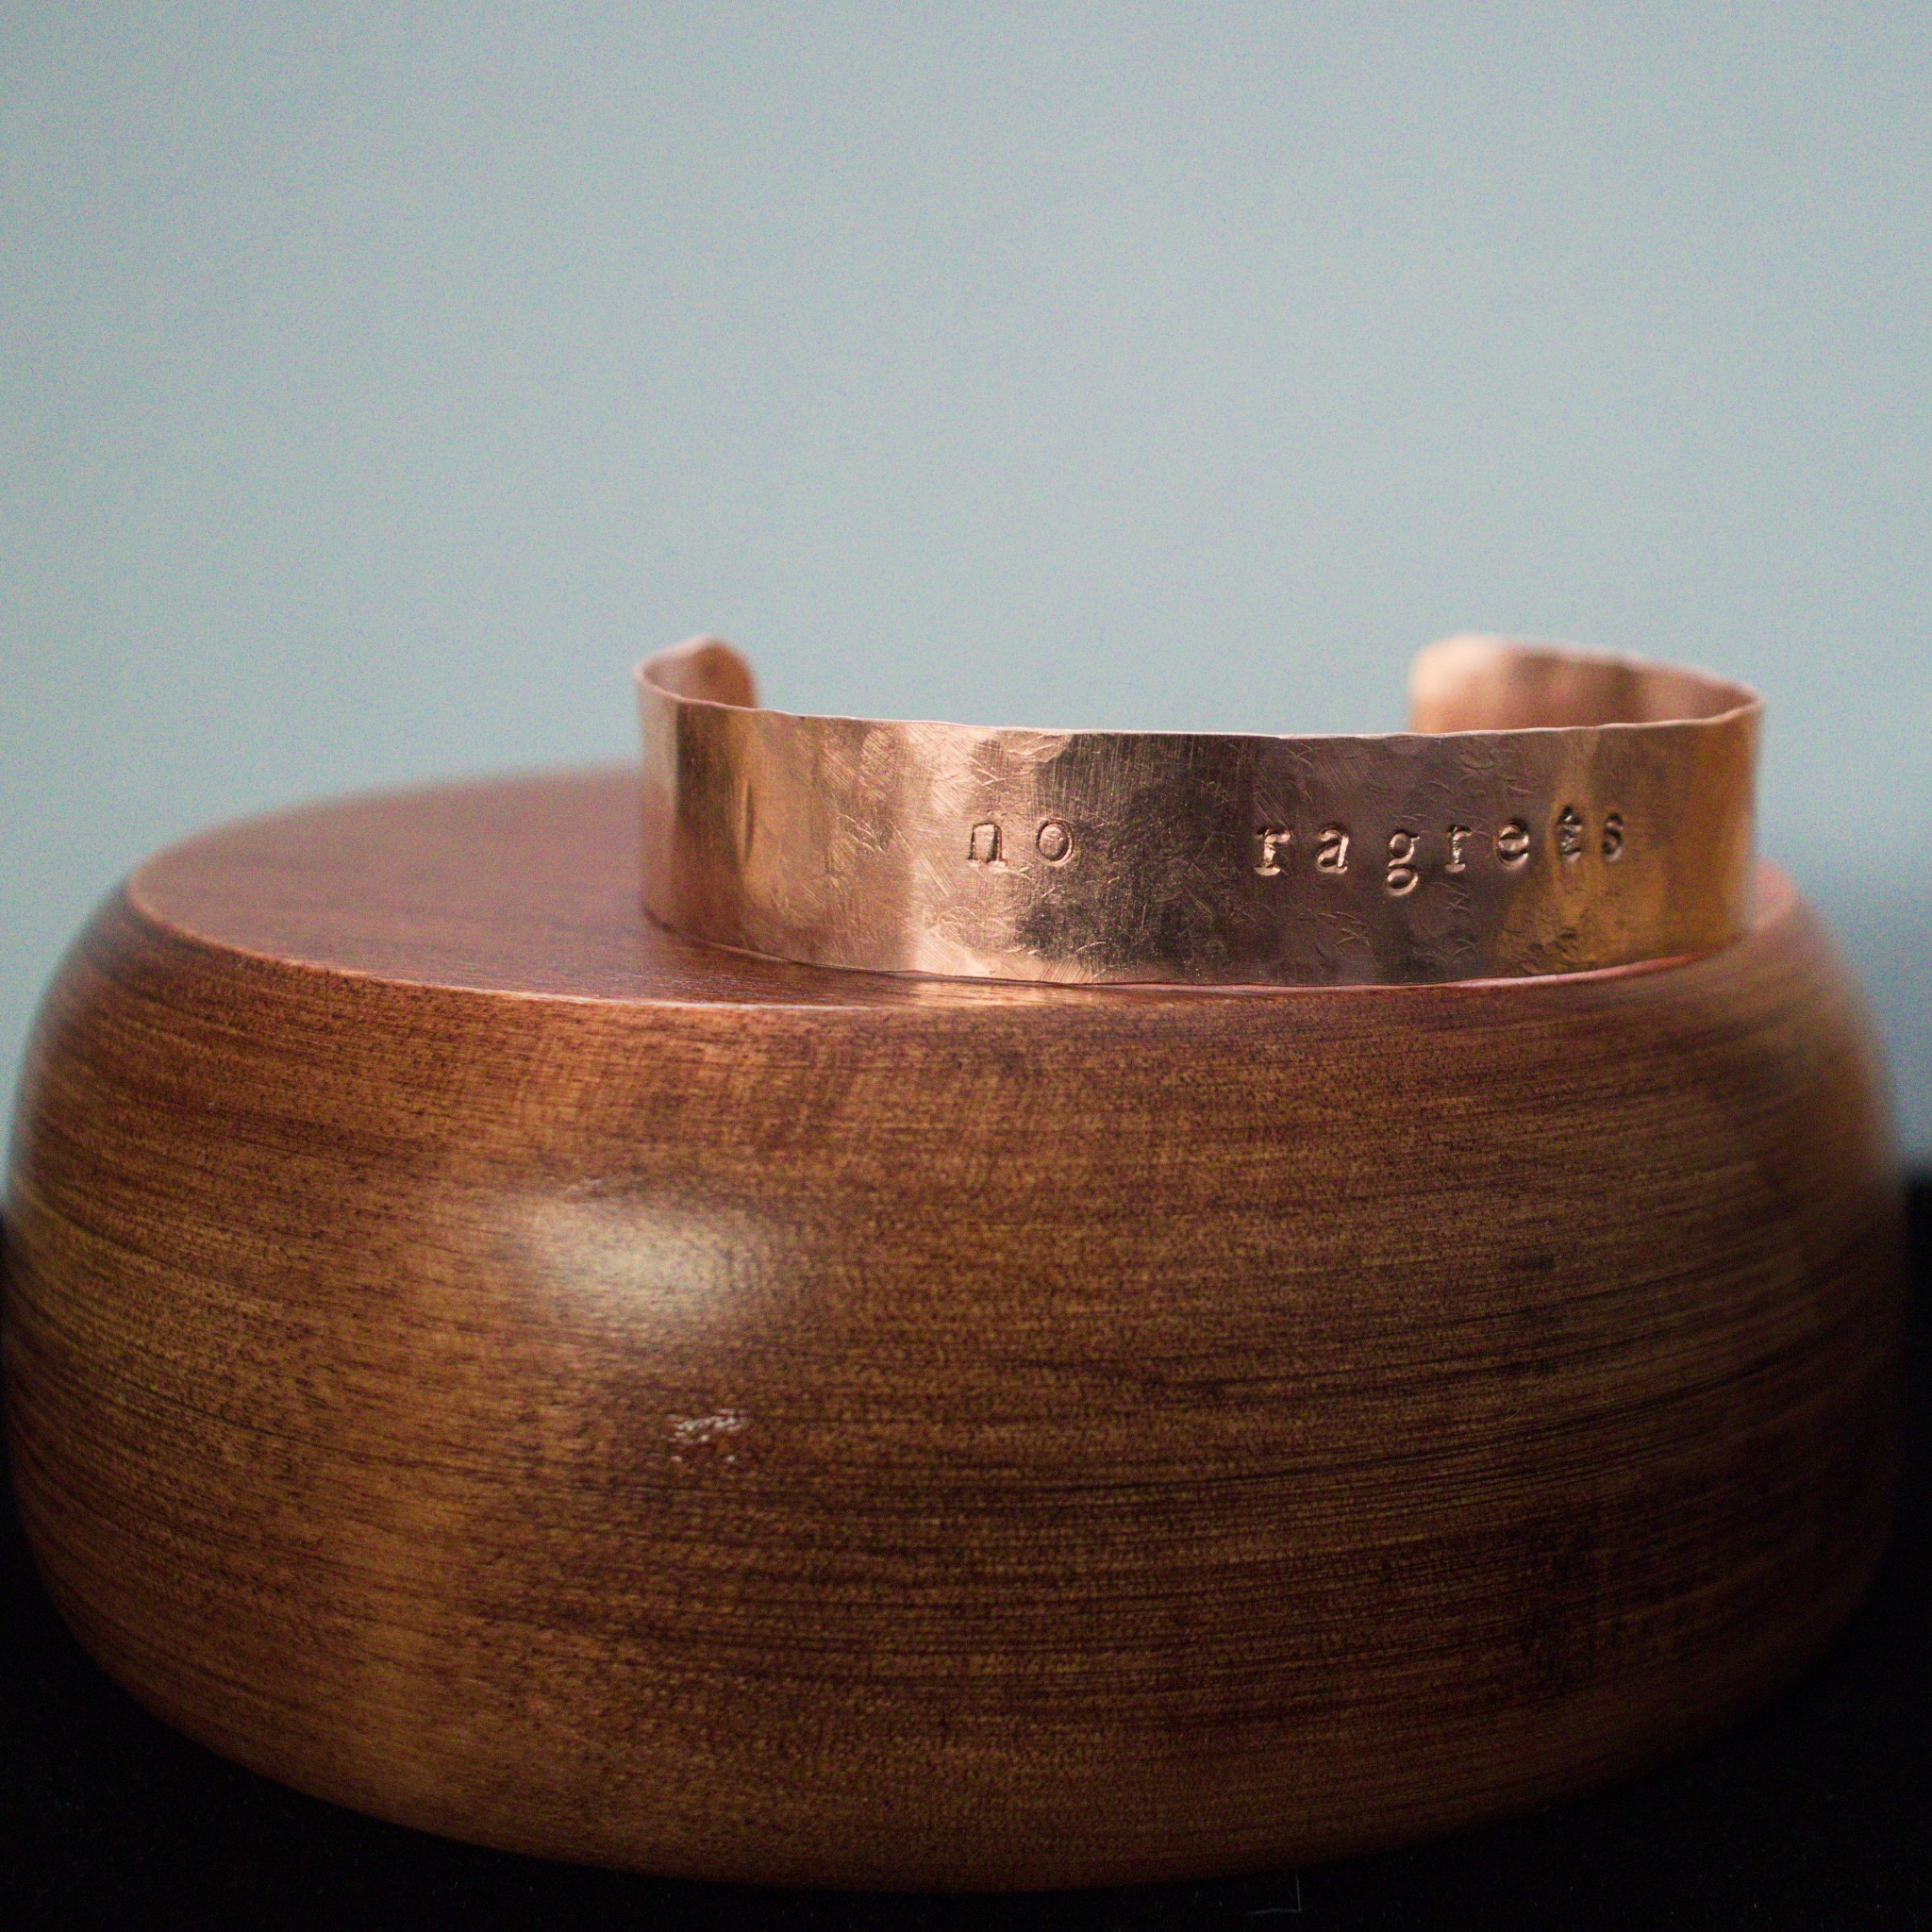 no ragrets – custom stamped copper bracelet – staged wood bowl (5)-1 (RR)